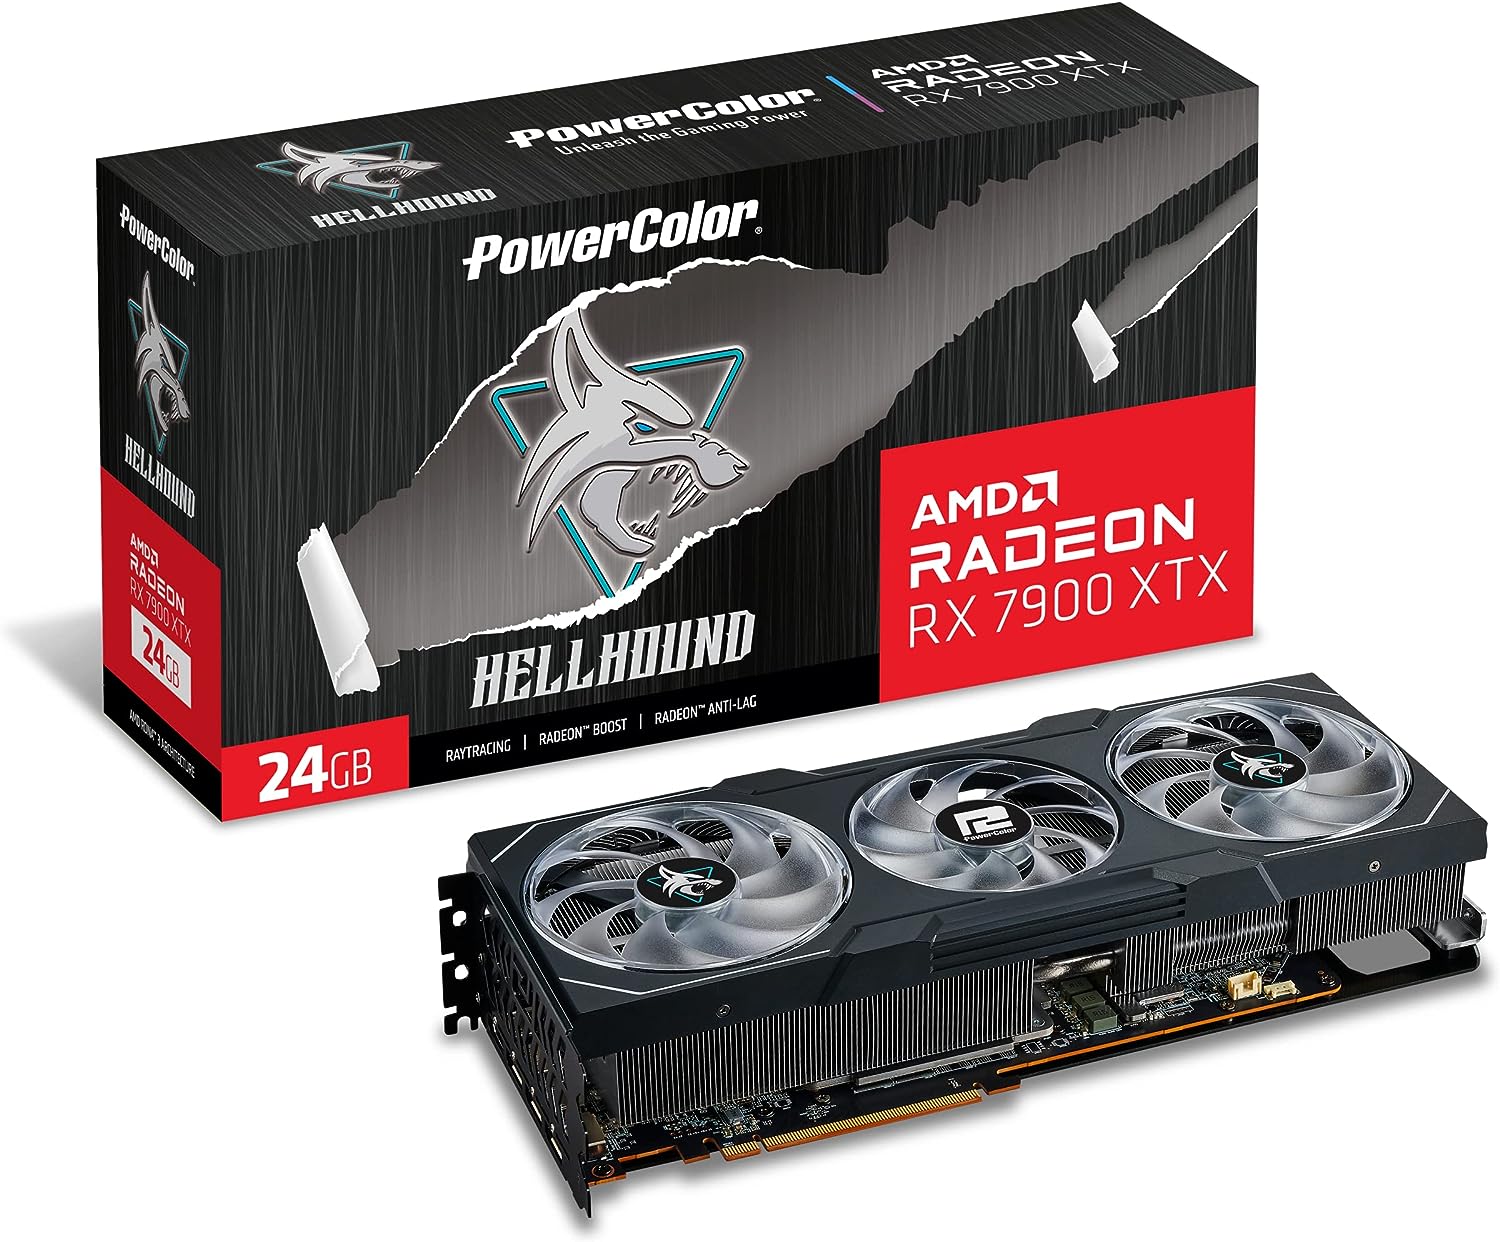 PowerColor Radeon RX 7900XTX | Hellhound 24GB GPU